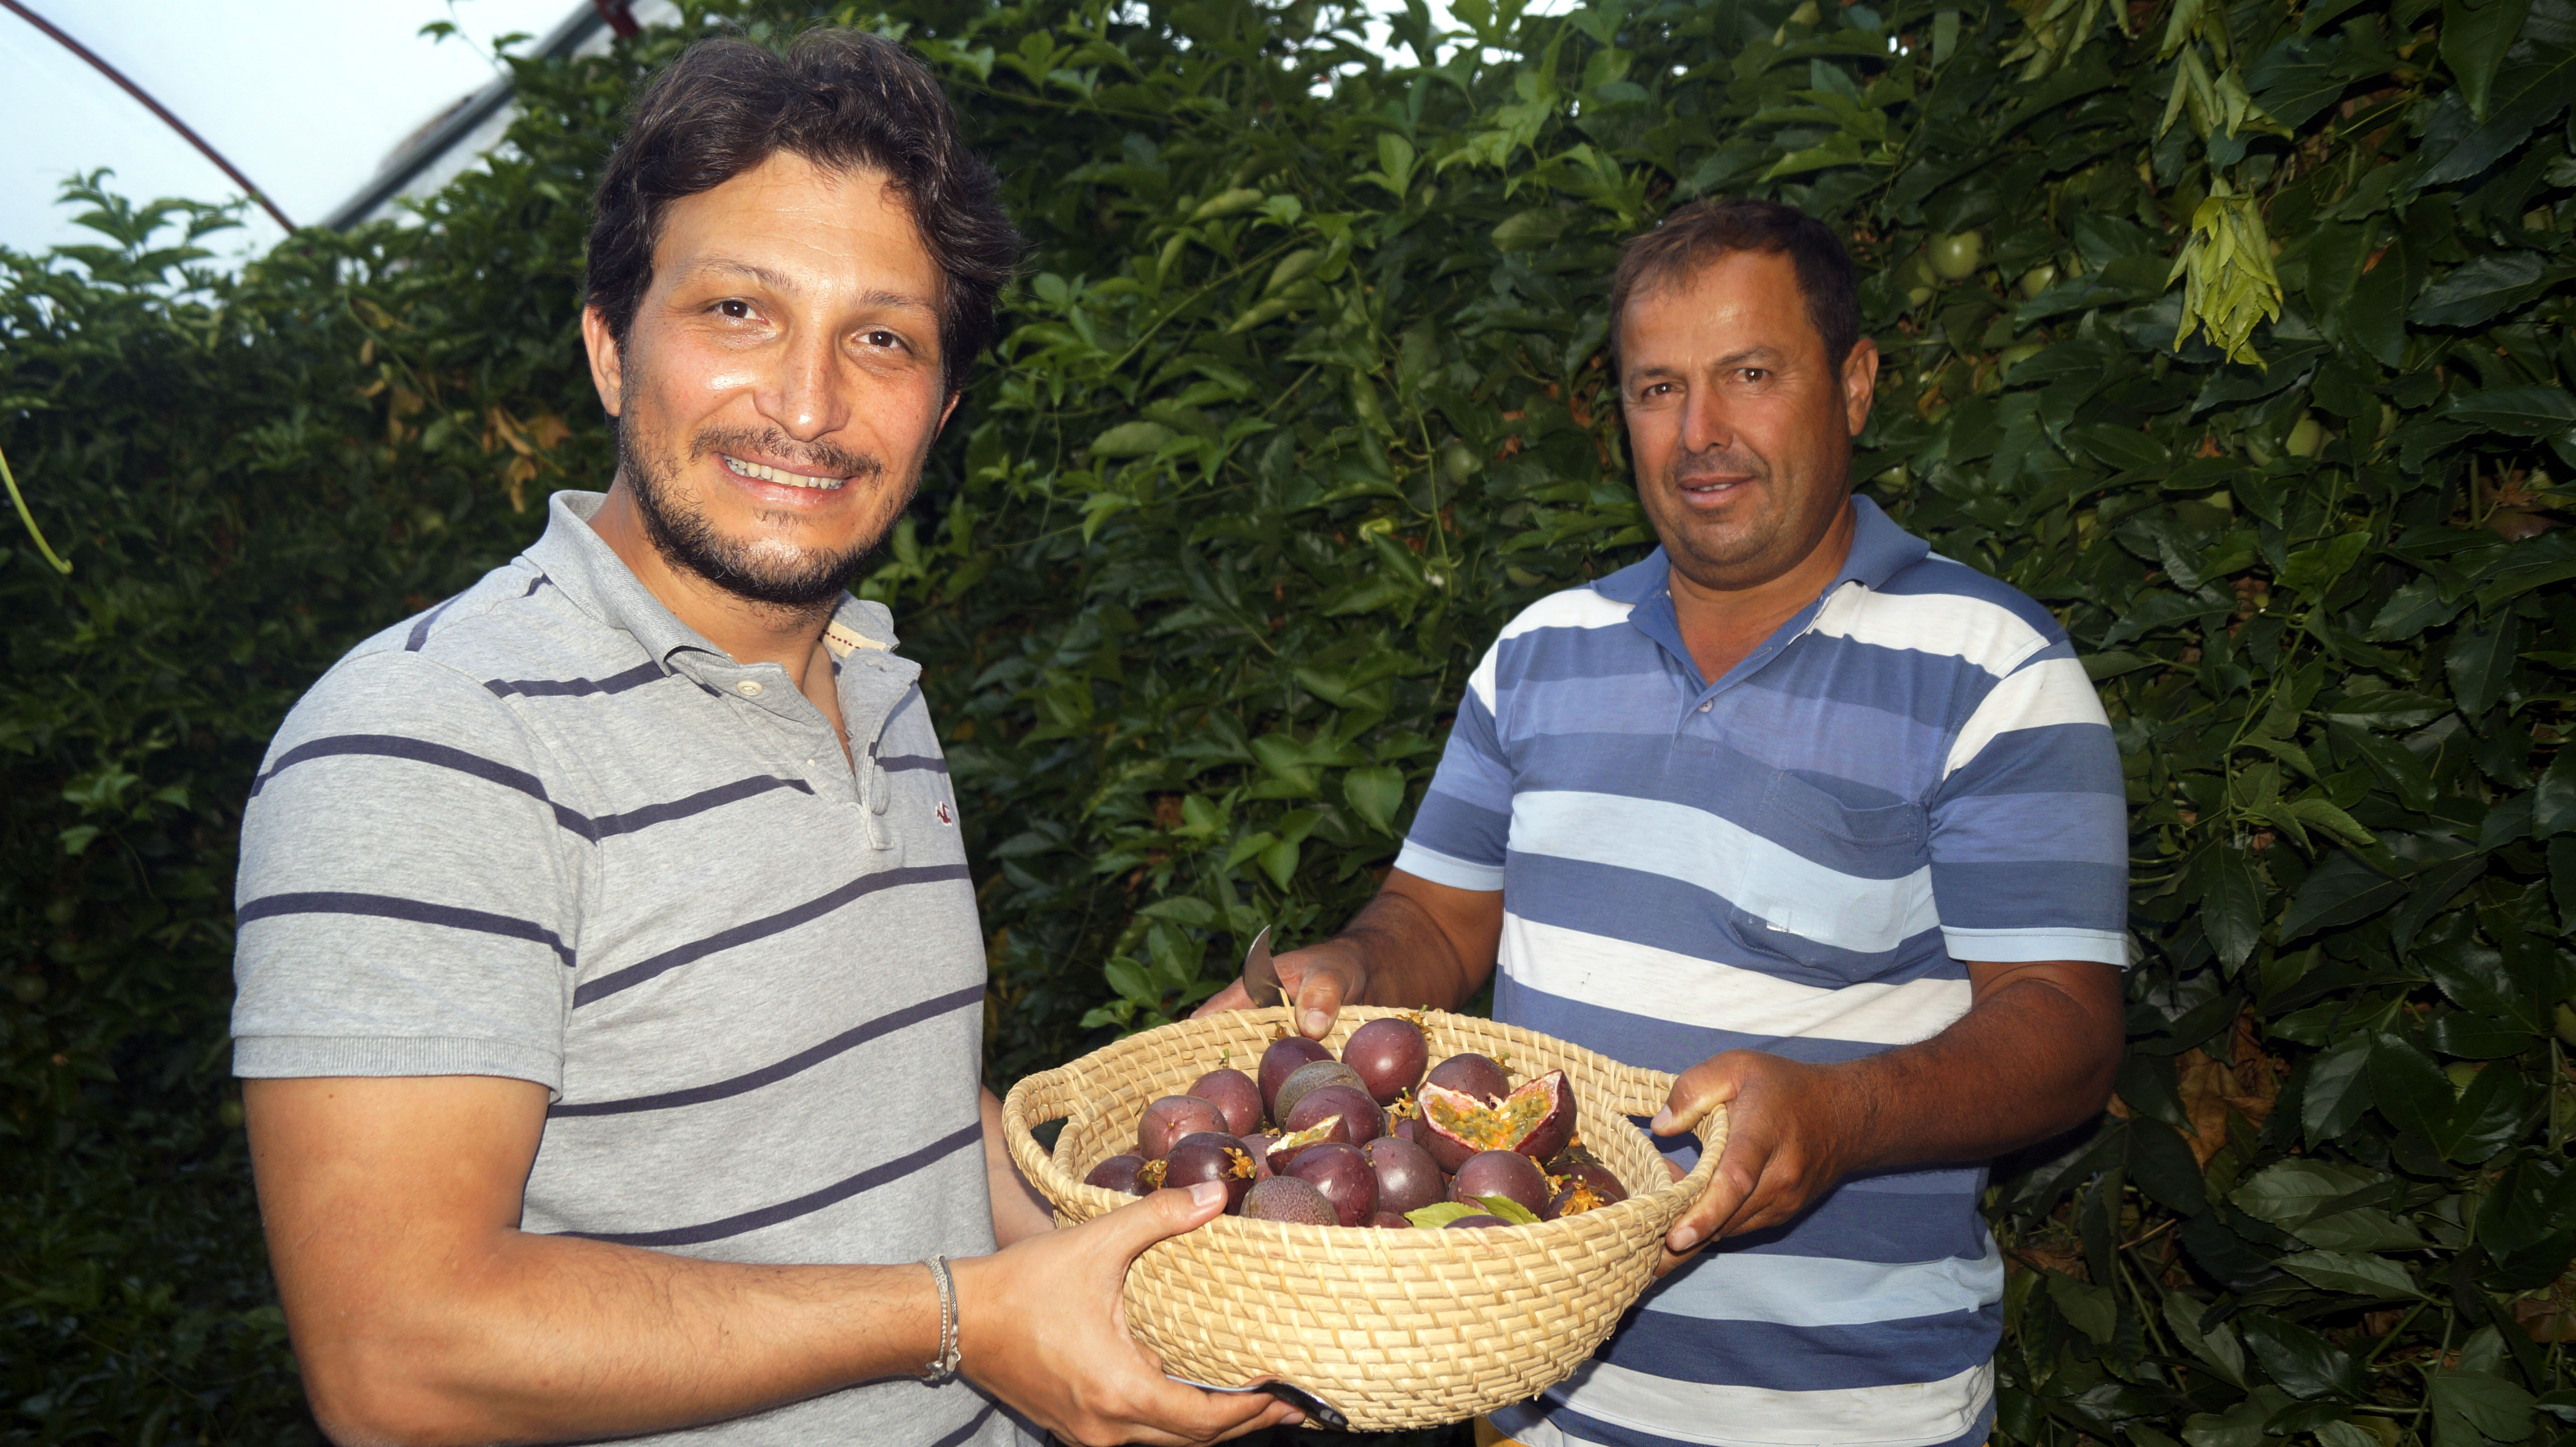 Antalya haberleri Passiflora meyvelerini 100 liradan satışa çıkardı